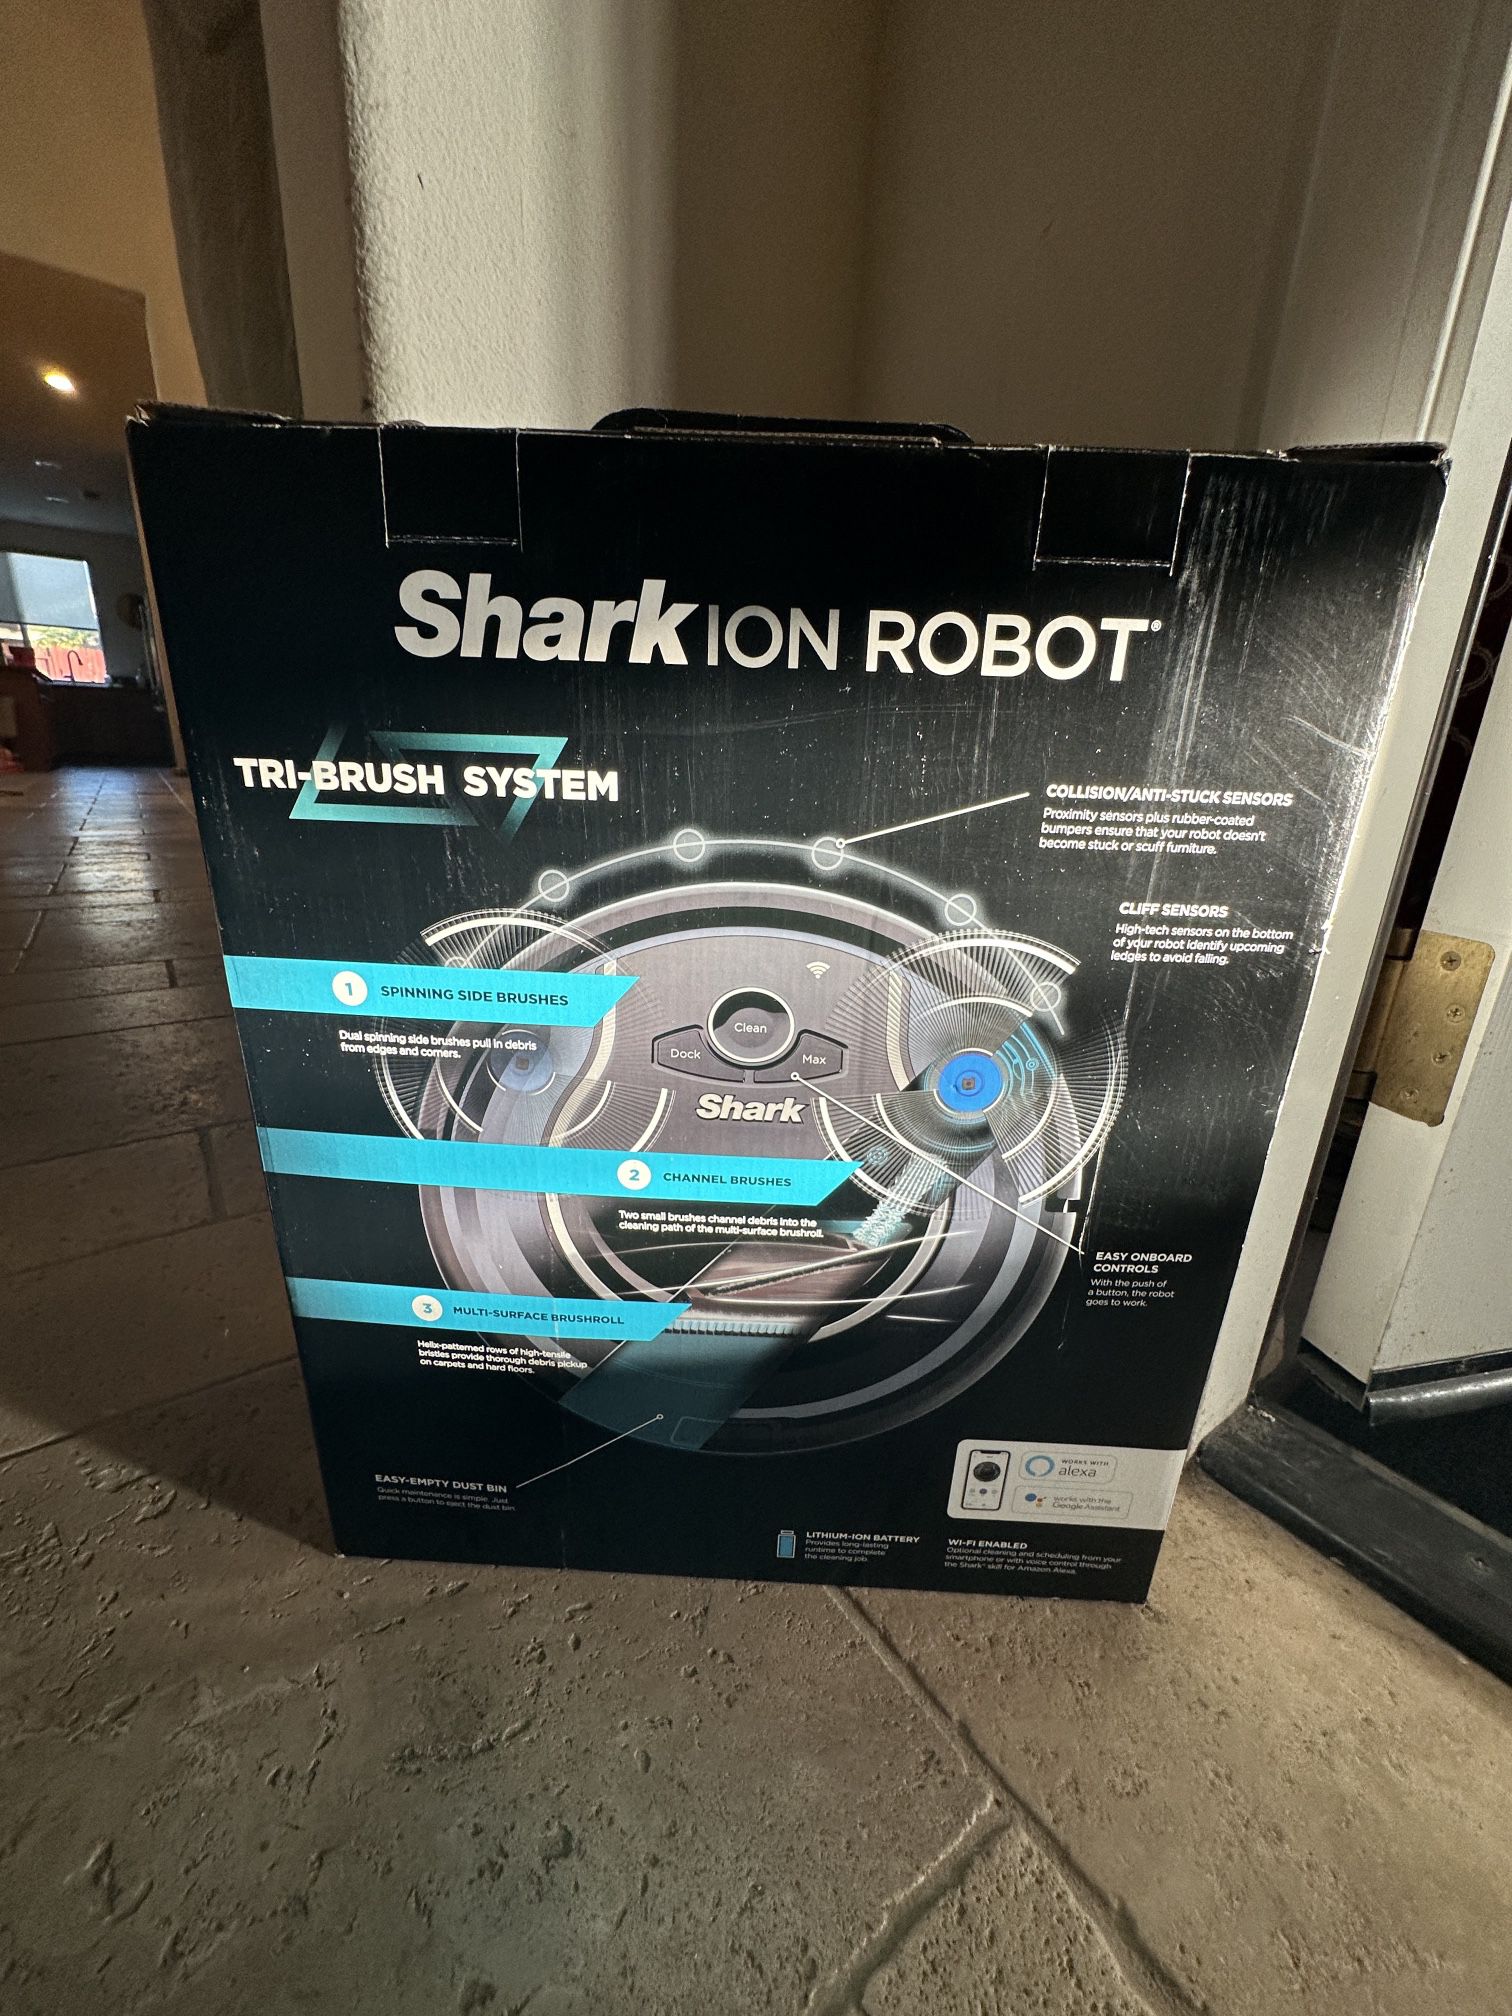 Shark Ion Robot